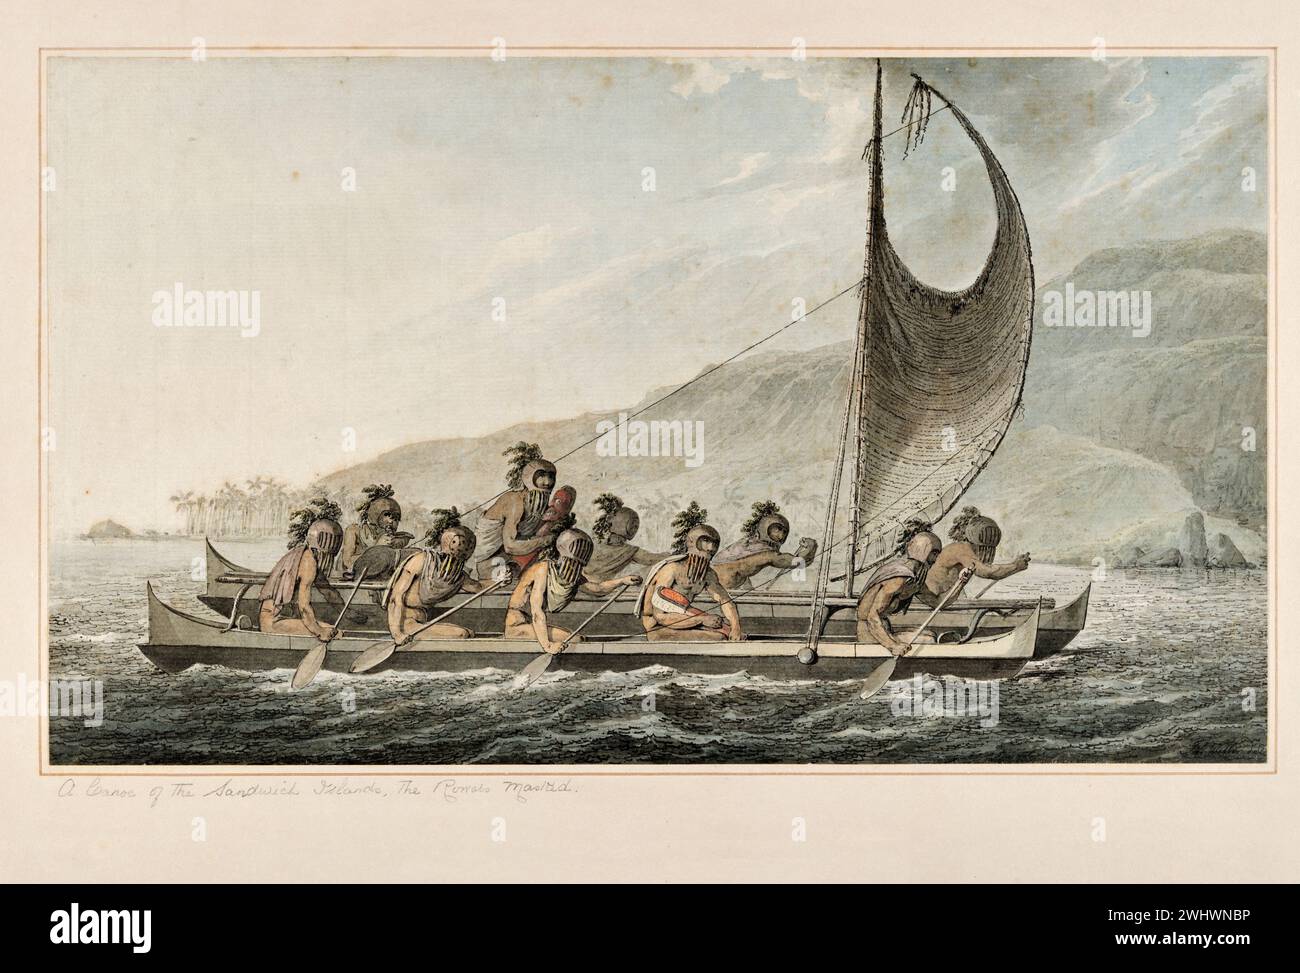 Una canoa delle Isole Sandwich, i Rowers Masked. Da "acquerelli che illustrano l'ultimo viaggio del capitano Cook" ca. 1773-1784 di John Webber. Webber fu nominato artista topografico e salpò con Cook nel terzo viaggio Foto Stock